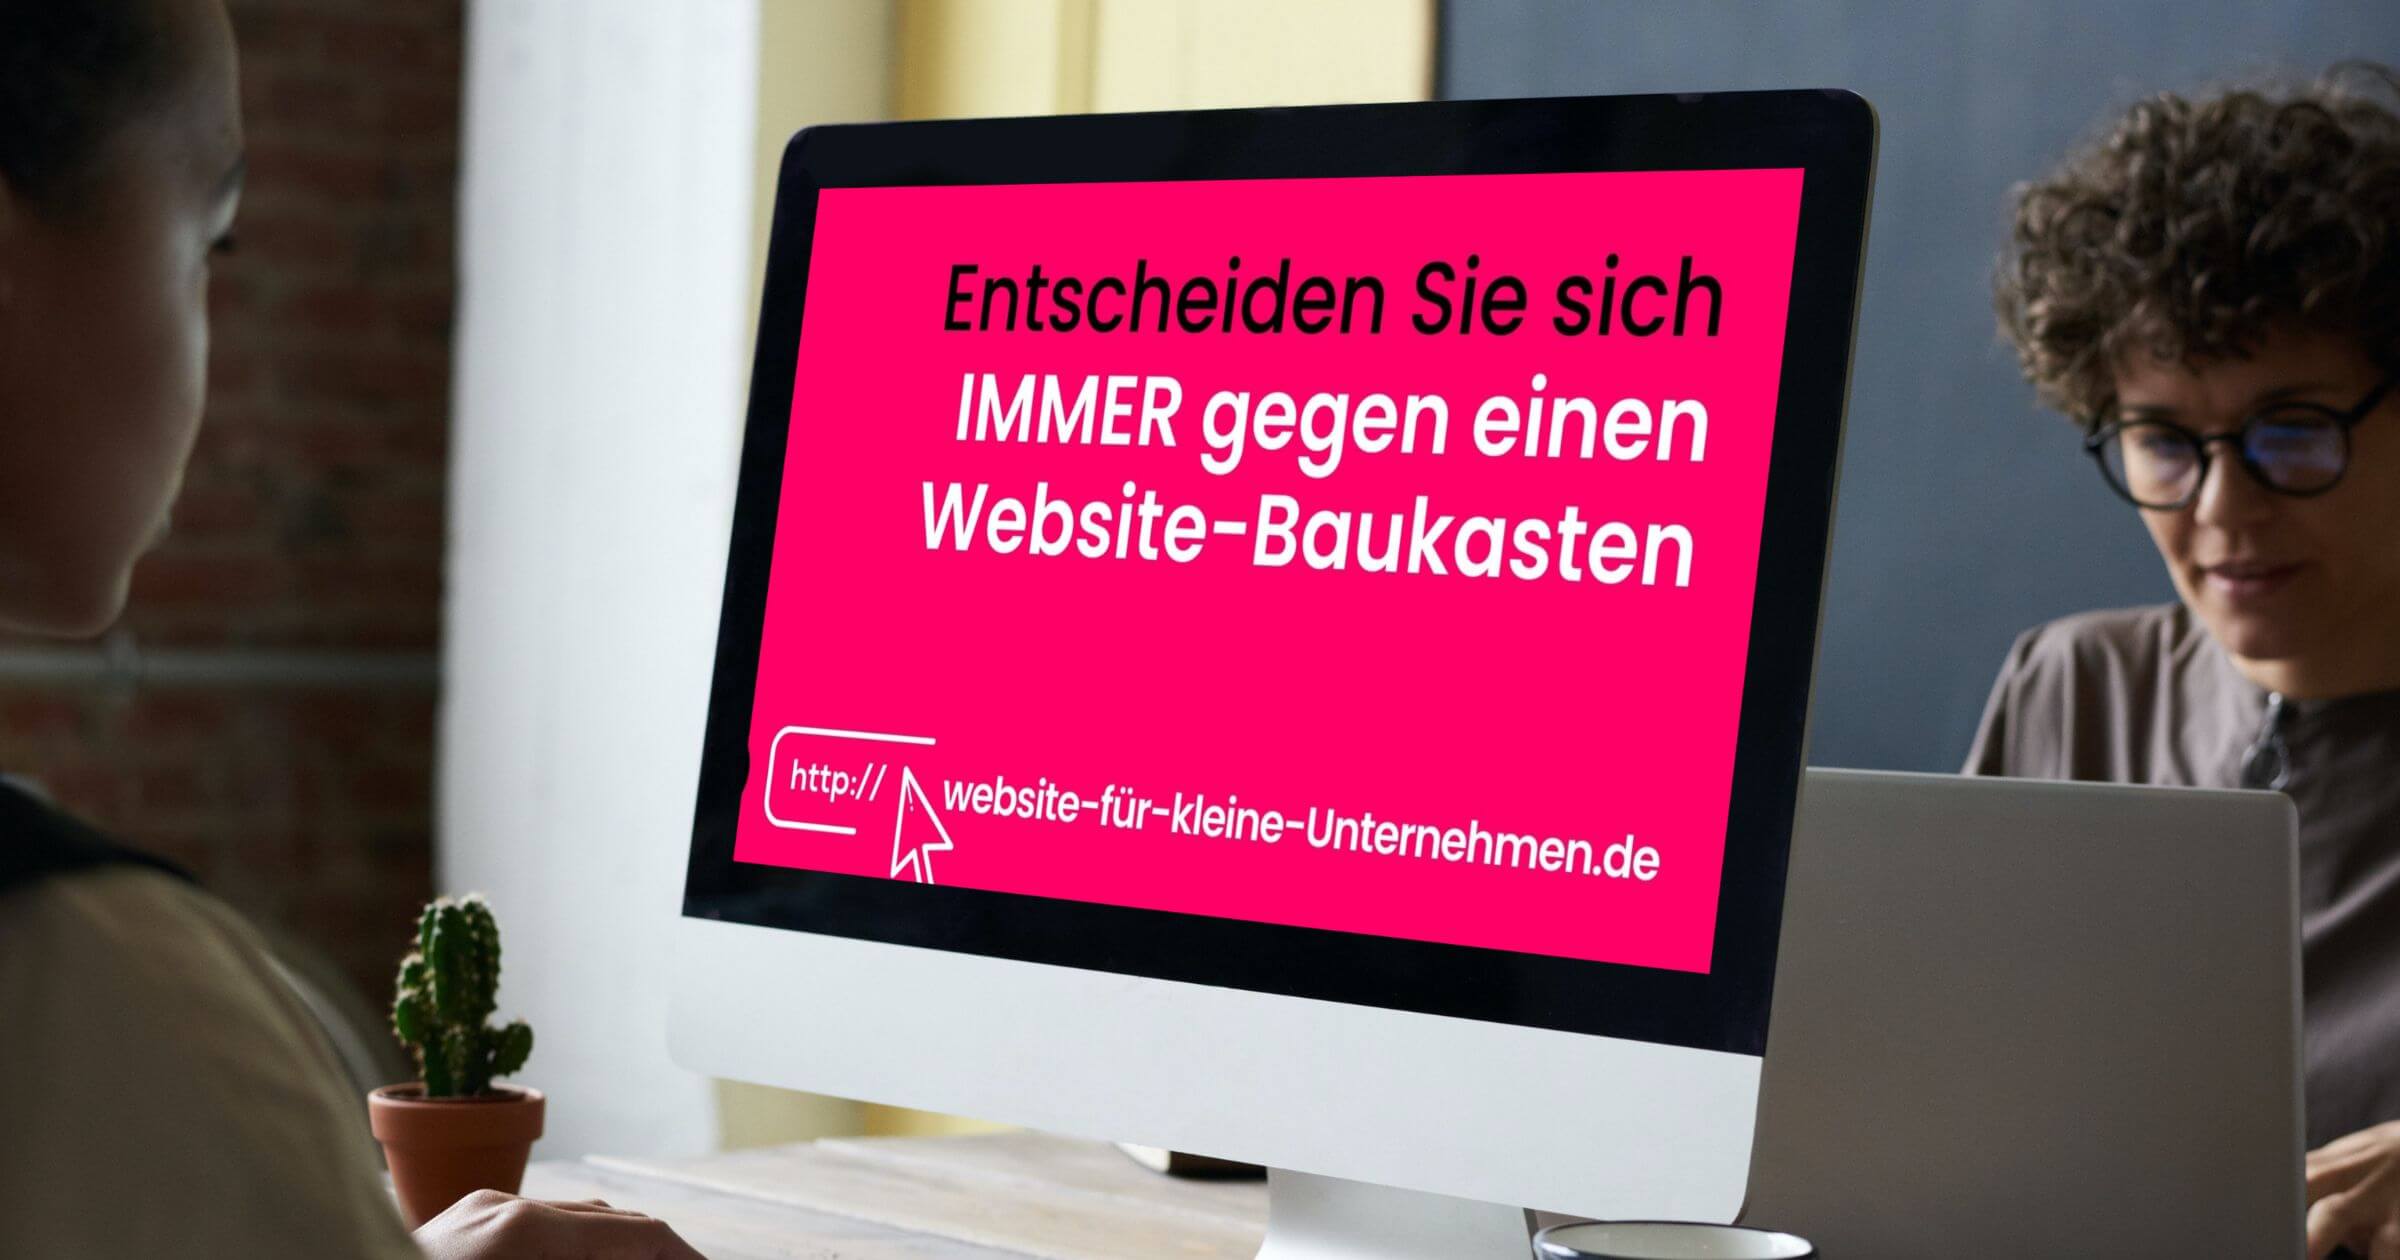 Website für Kleinunternehmen und Website für kleine Unternehmen - Gegen Website-Baukasten